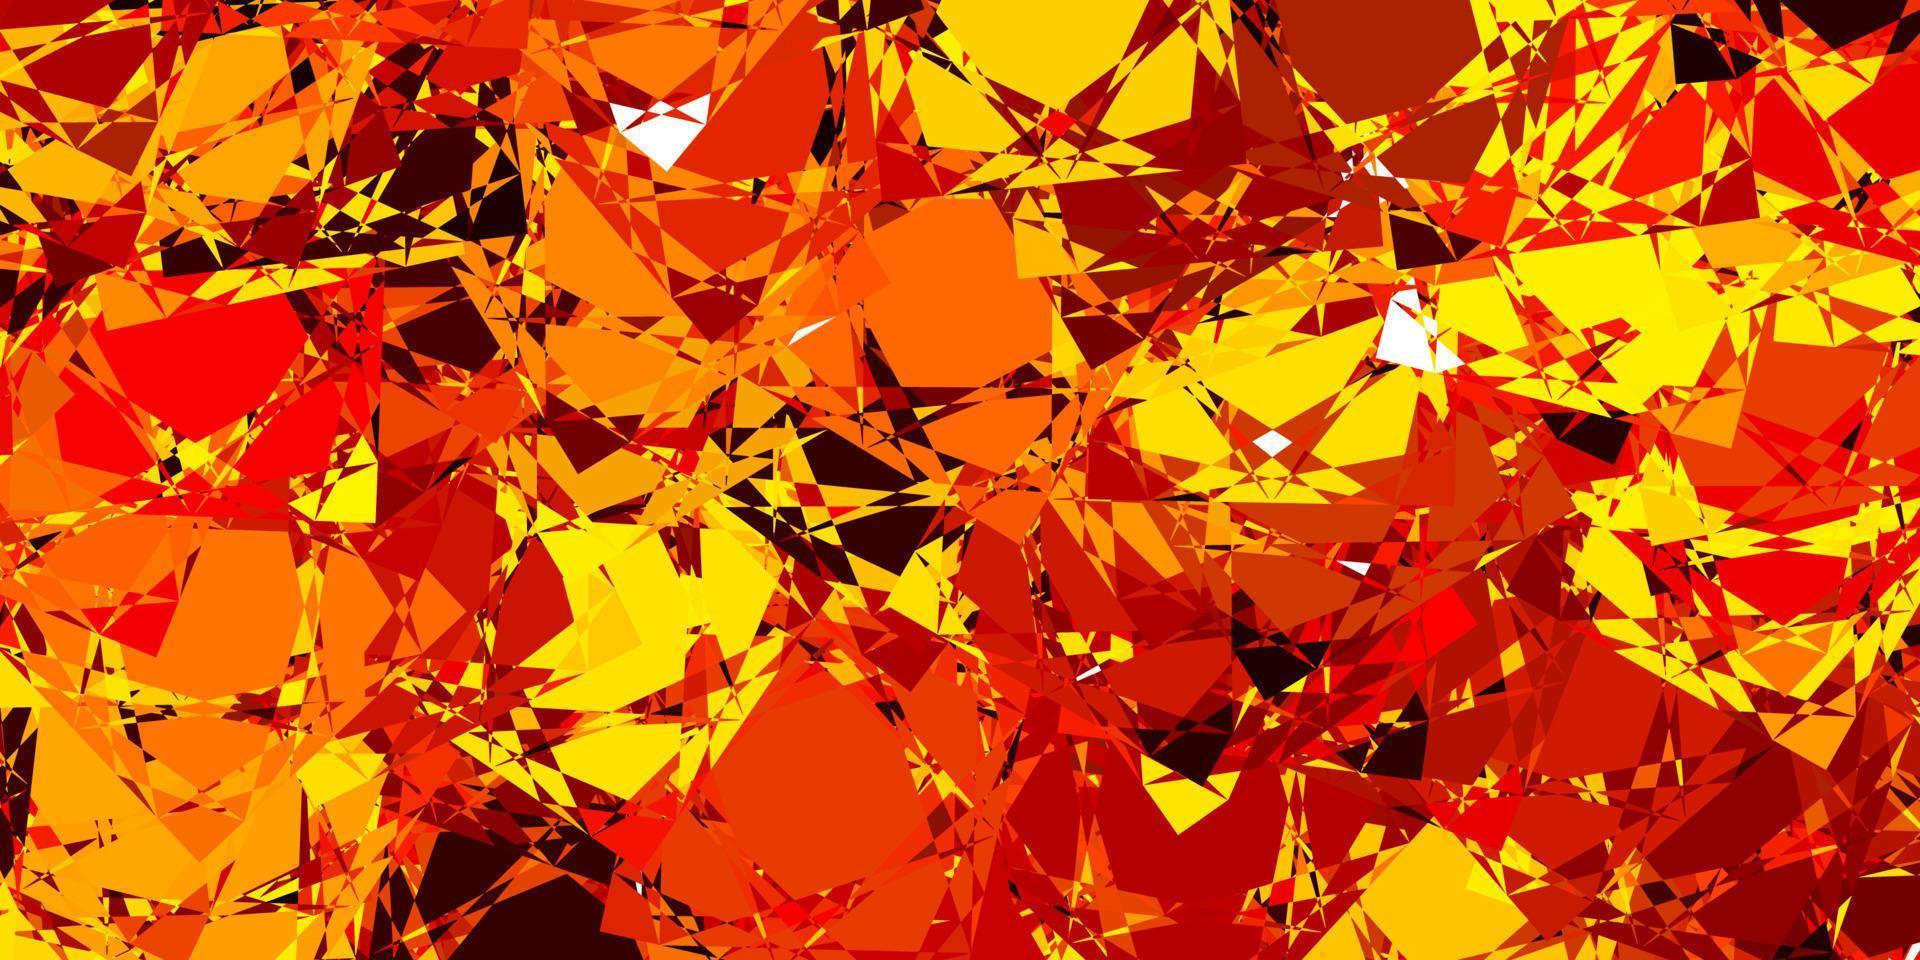 ljus orange vektor bakgrund med polygonala former.